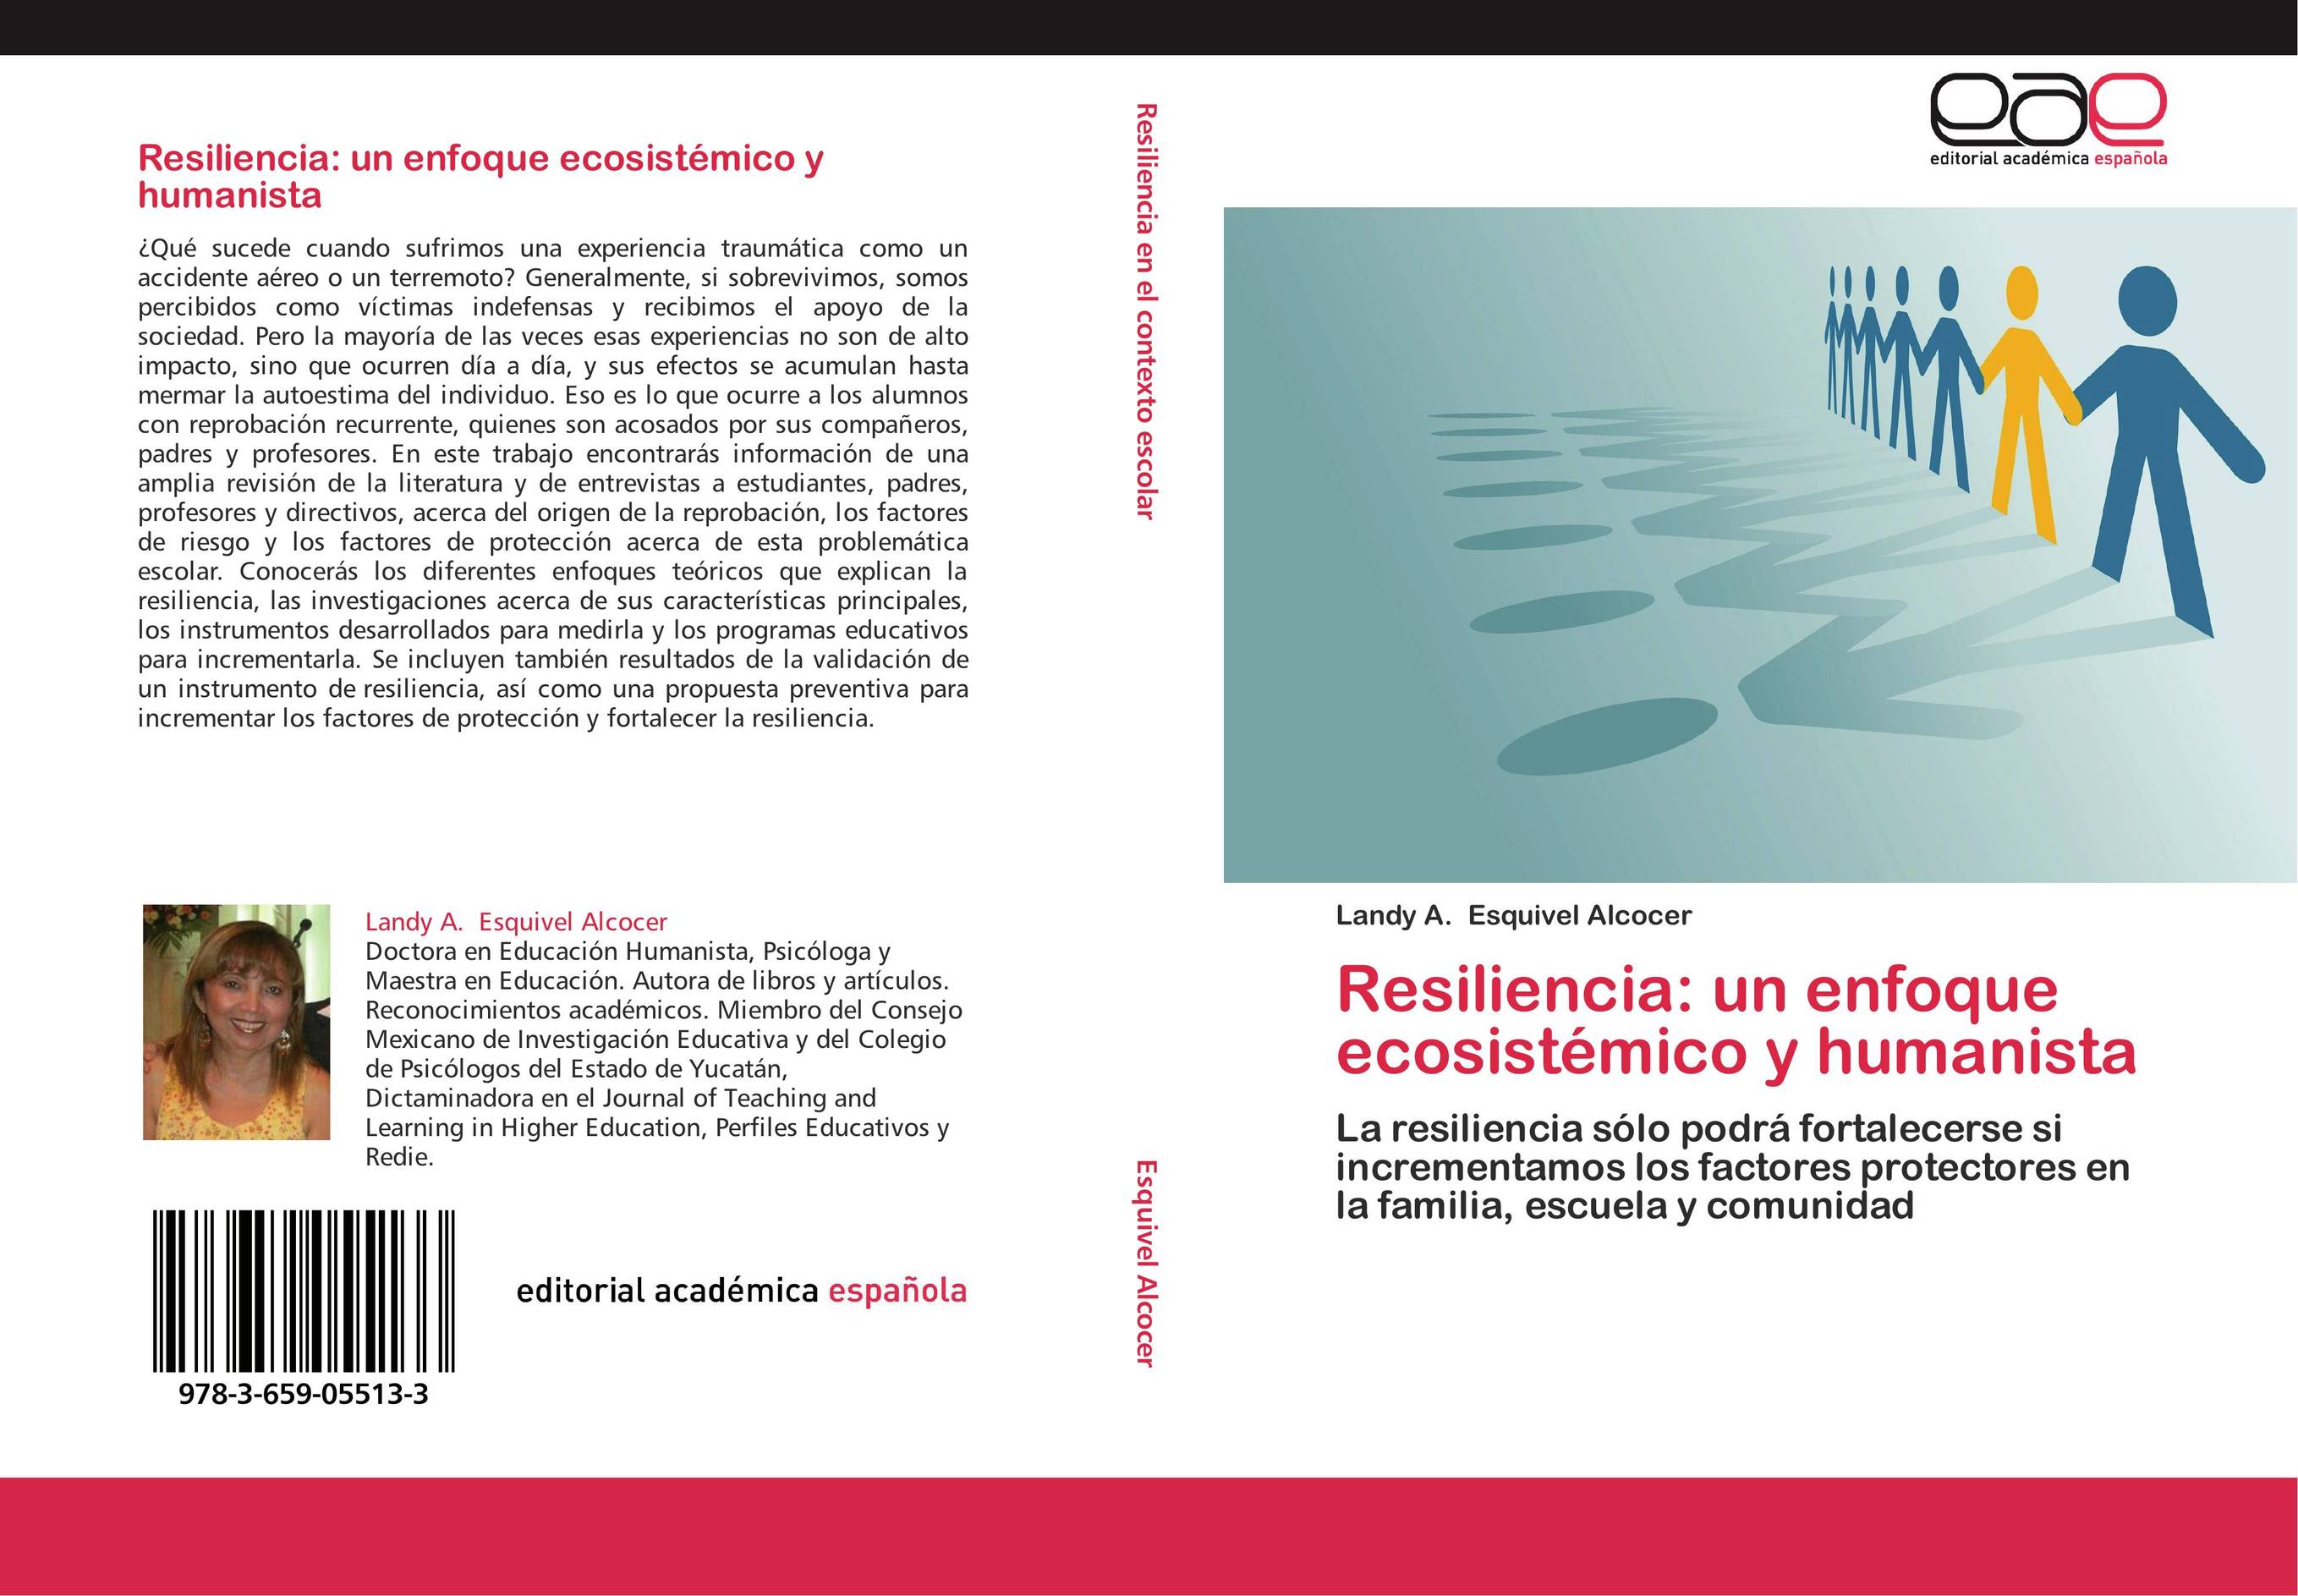 Resiliencia: un enfoque ecosistémico y humanista